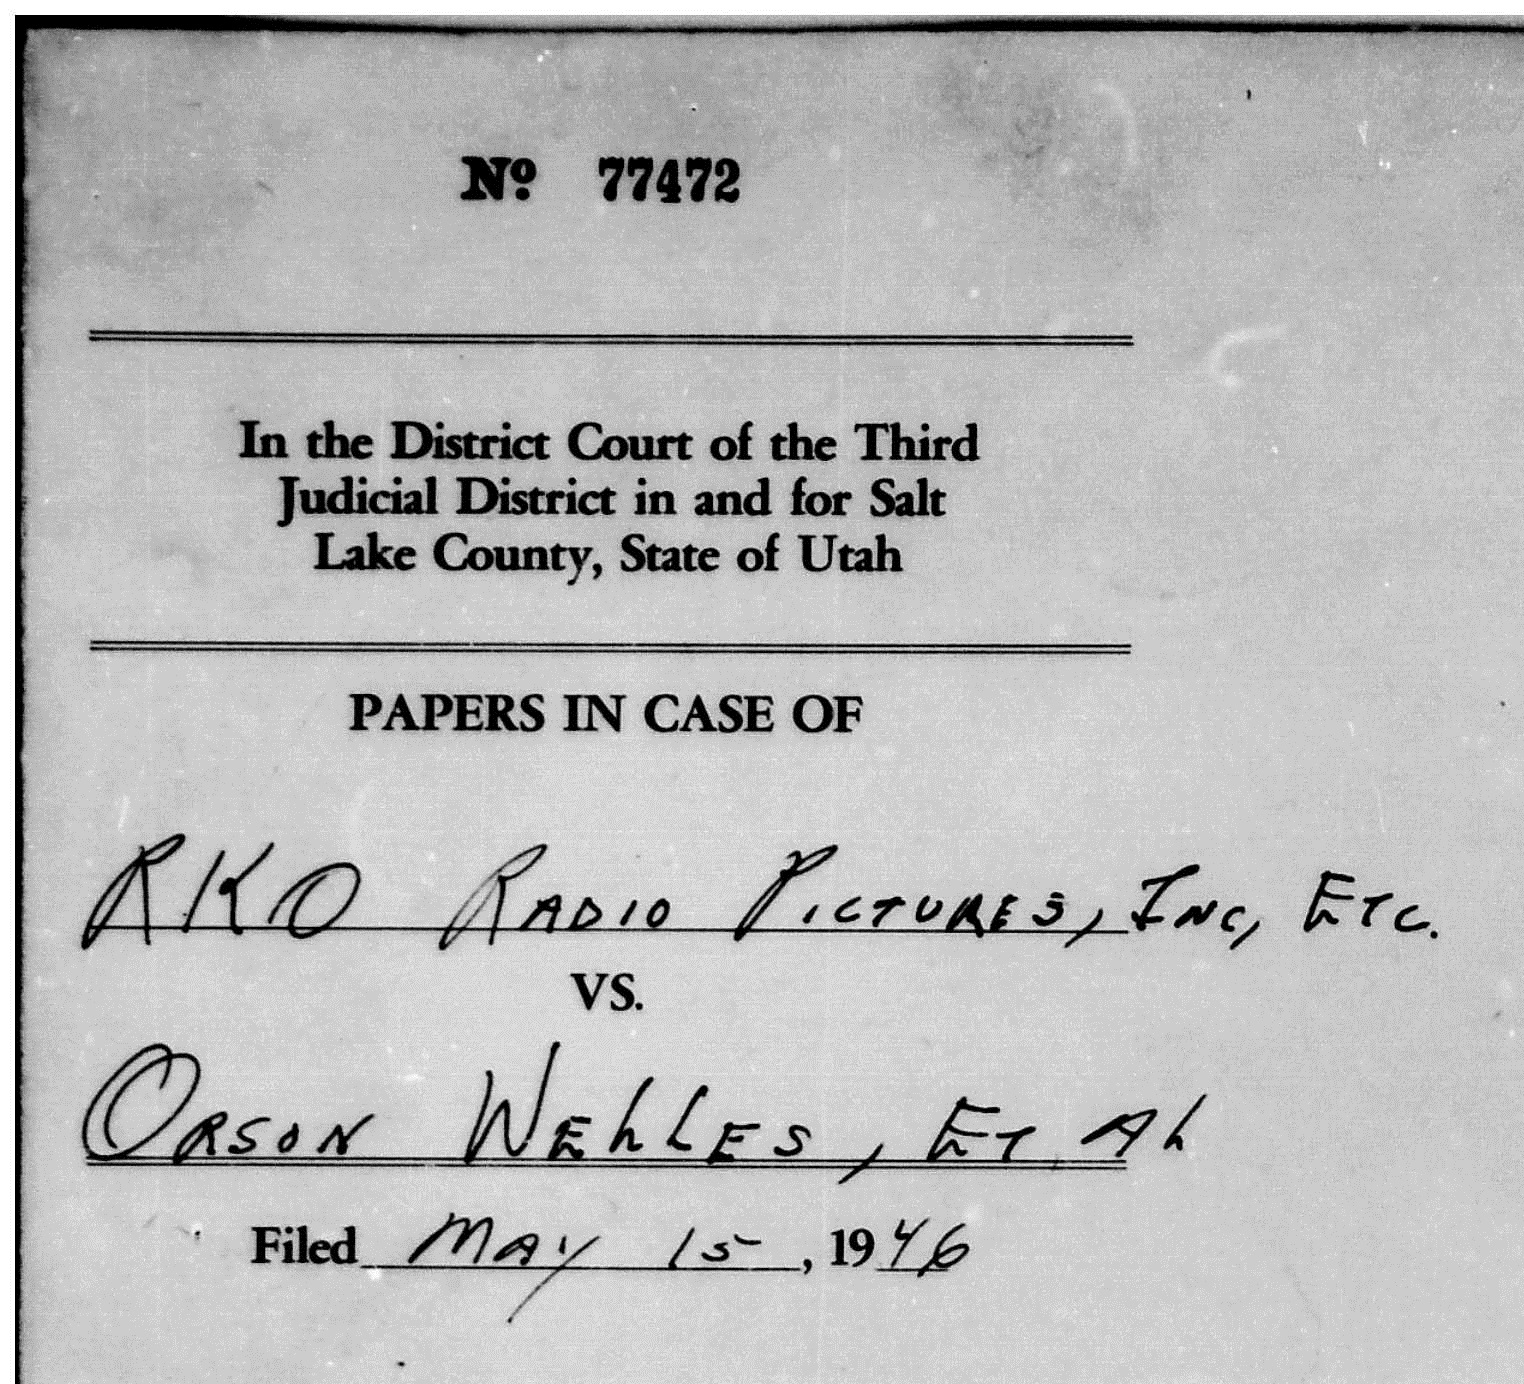 RKO Radio Pictures vs Orson Welles et al 1946 Case file #77472 Cover Page